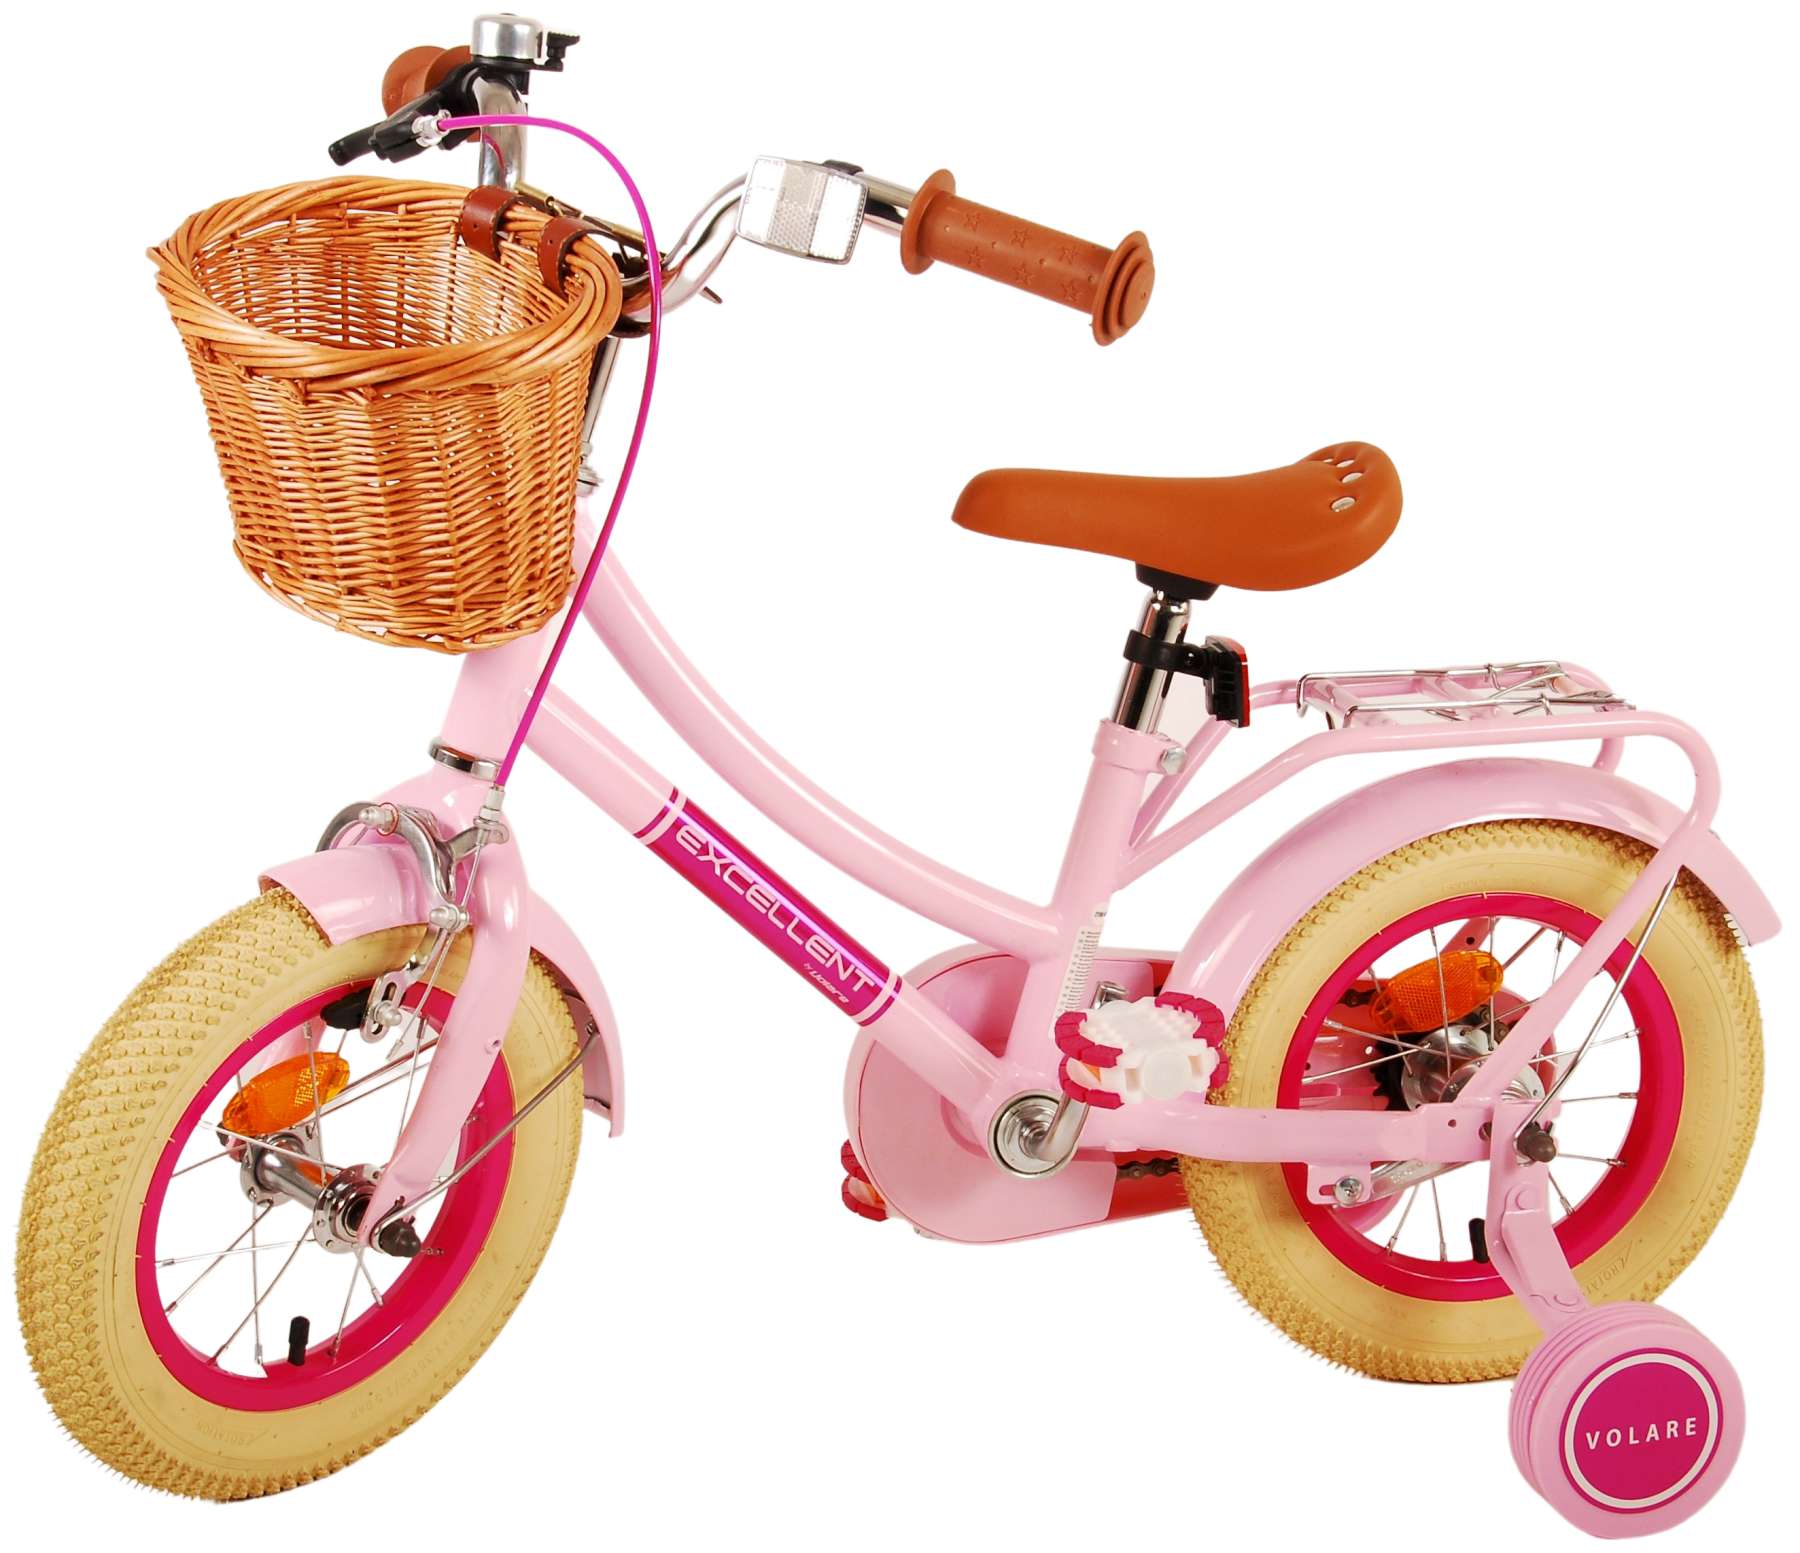 Kinderfahrrad Excellent für Mädchen 12 Zoll Kinderrad in Rosa